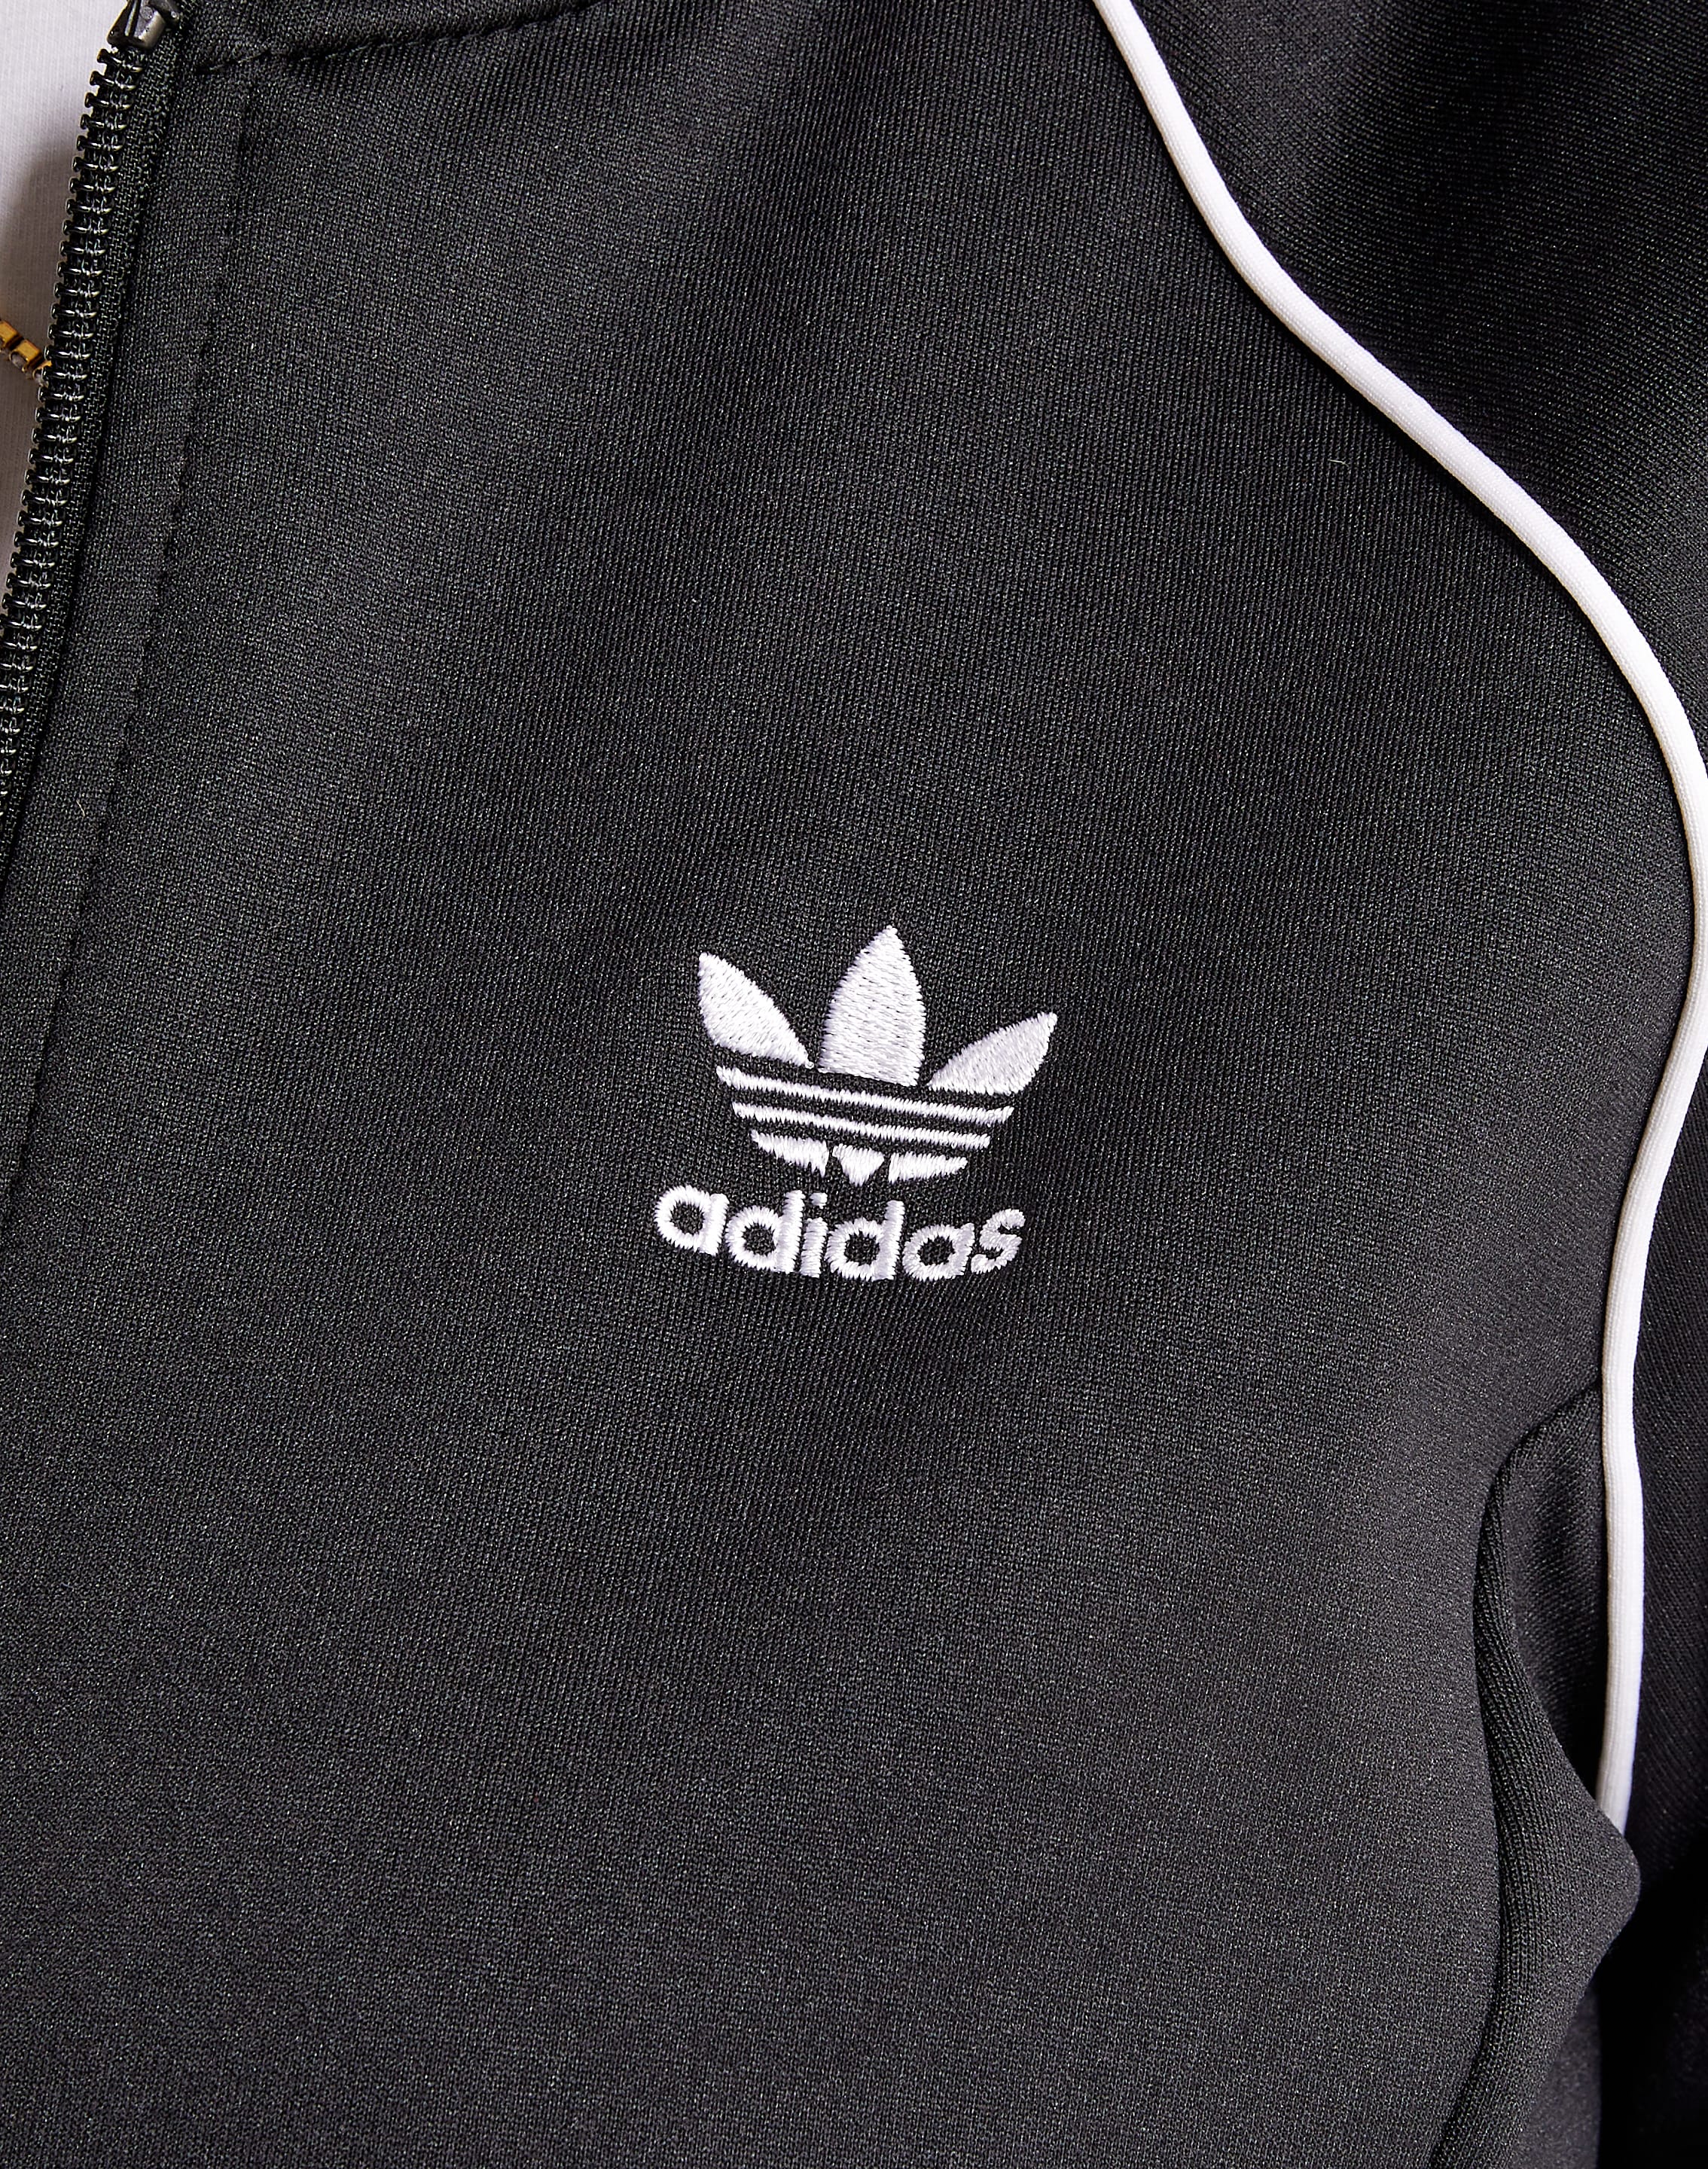 Adidas SST Track Jacket – DTLR